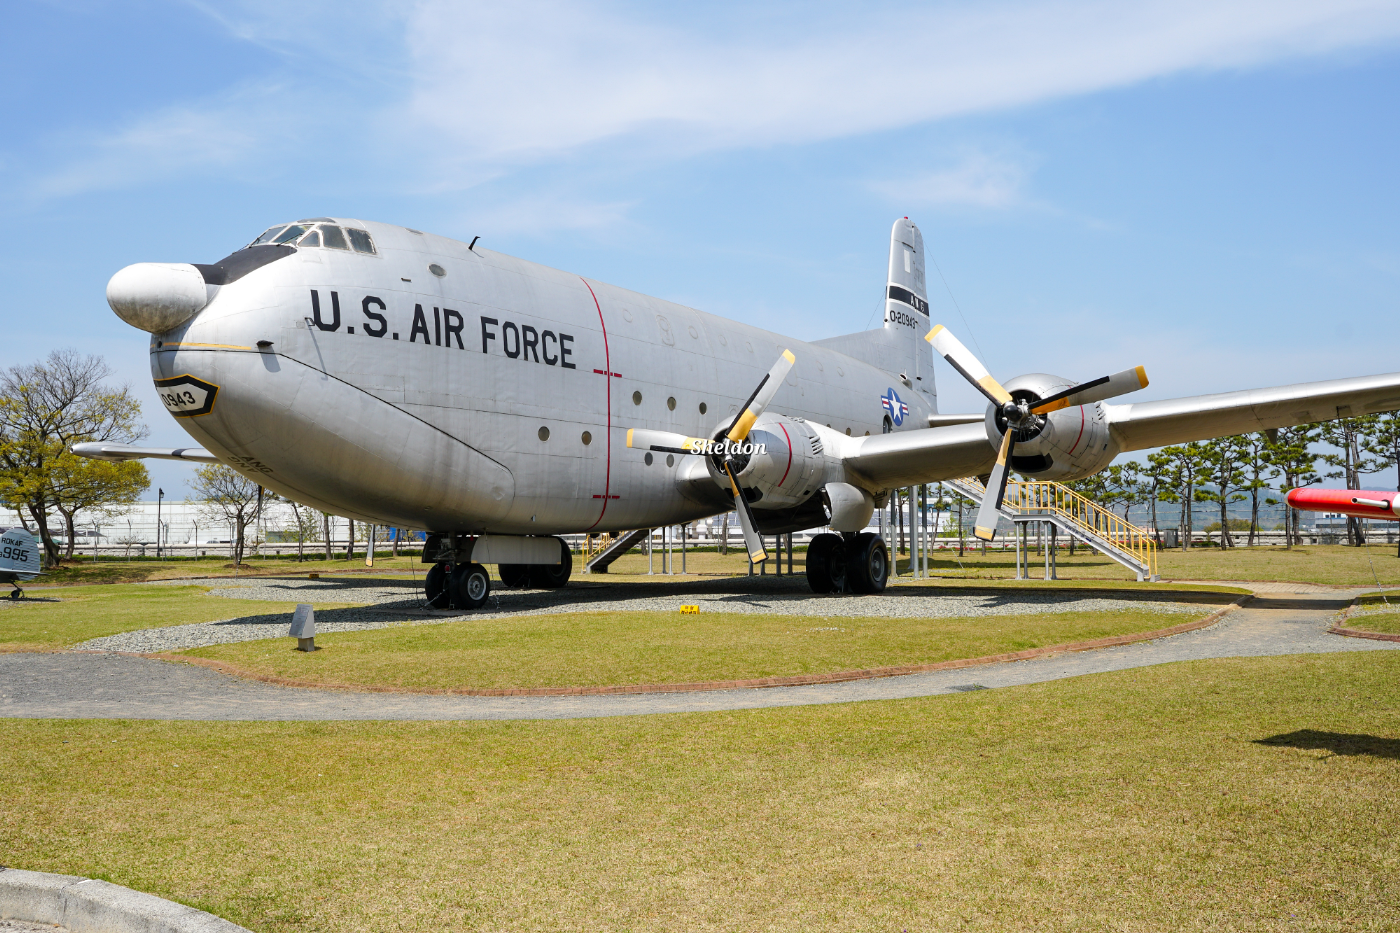 C-124C 수송기는 6.25 전쟁 당시 최대 크기의 전략수송기로, 태평양을 횡단하면서 병력과 물자를 운반하는 임무를 수행했다.